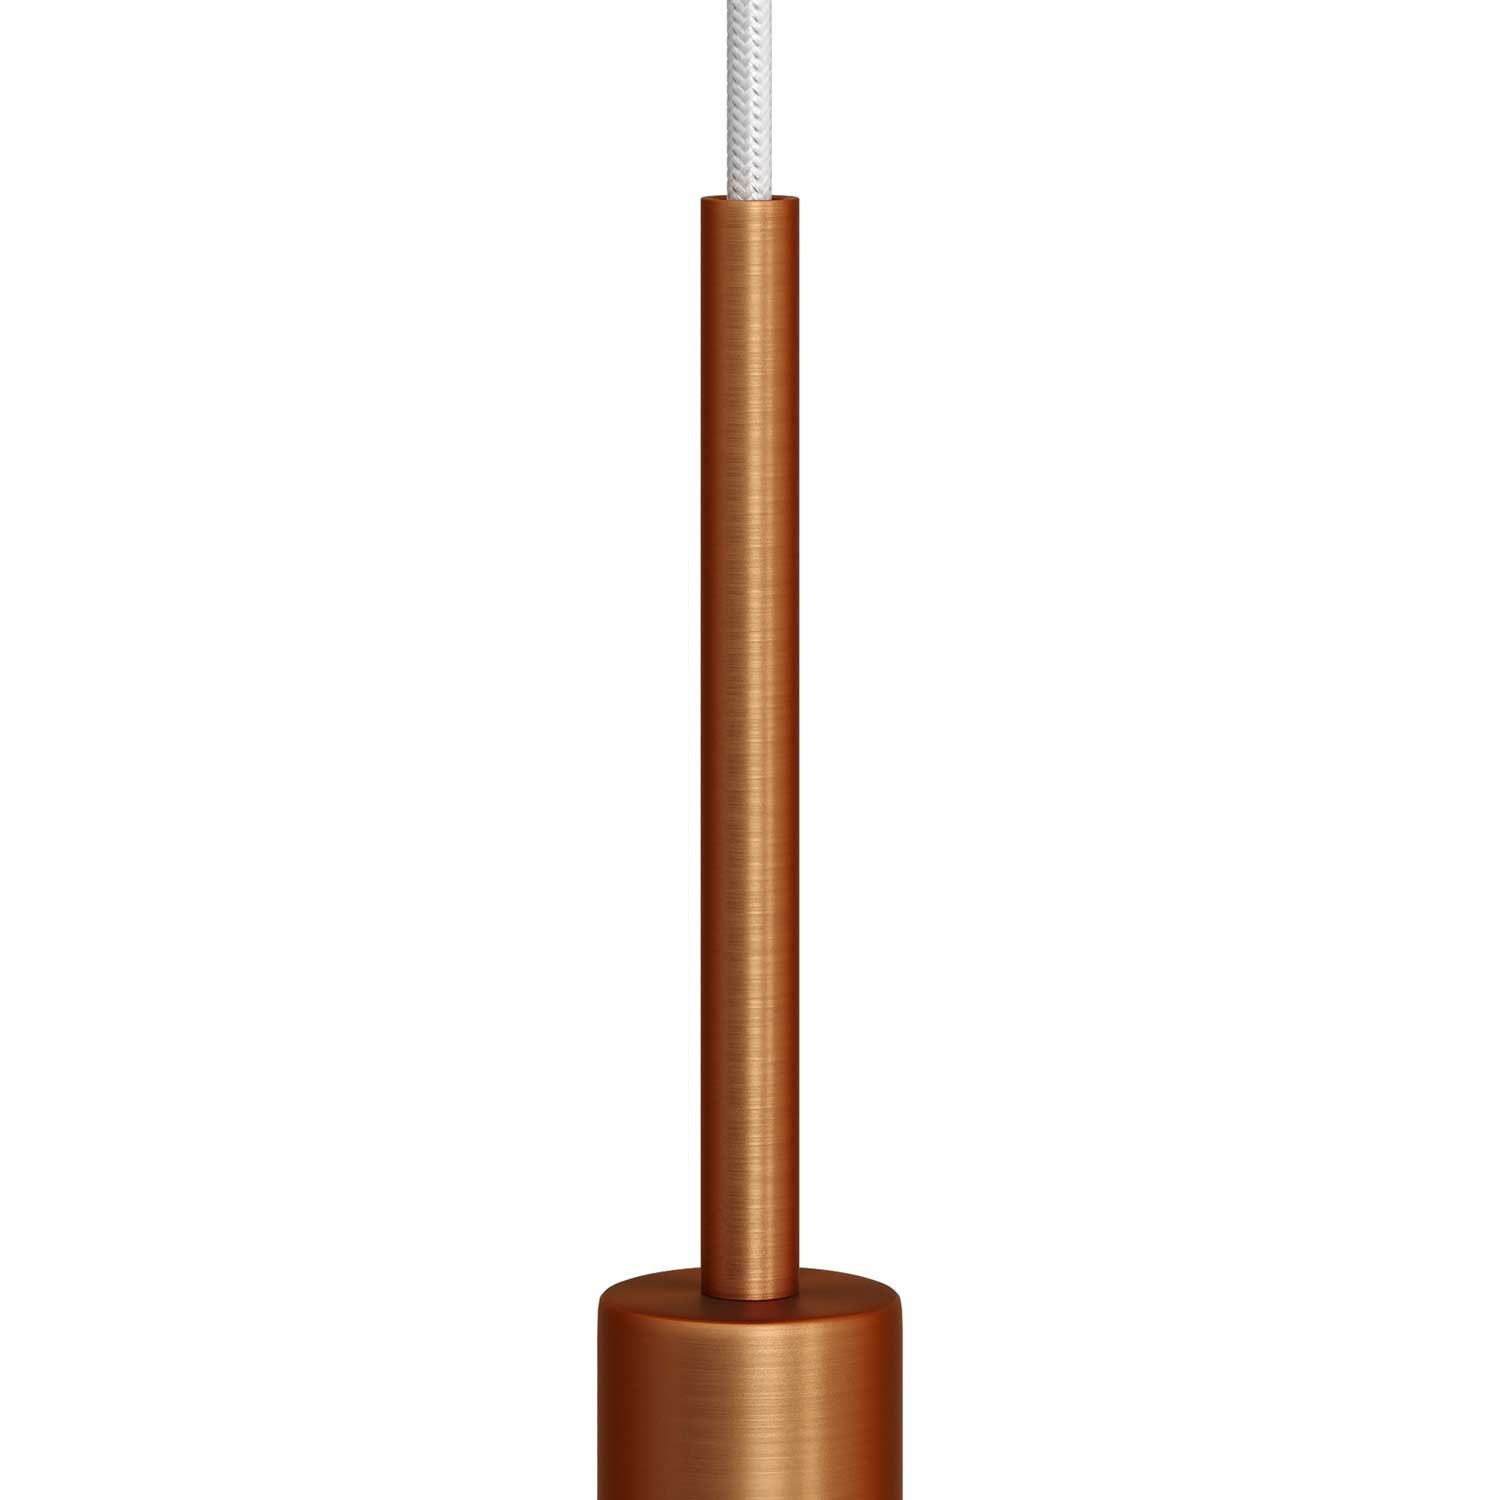 Serracavo cilindrico in metallo lunghezza 15 cm completo di tige, dado e rondella